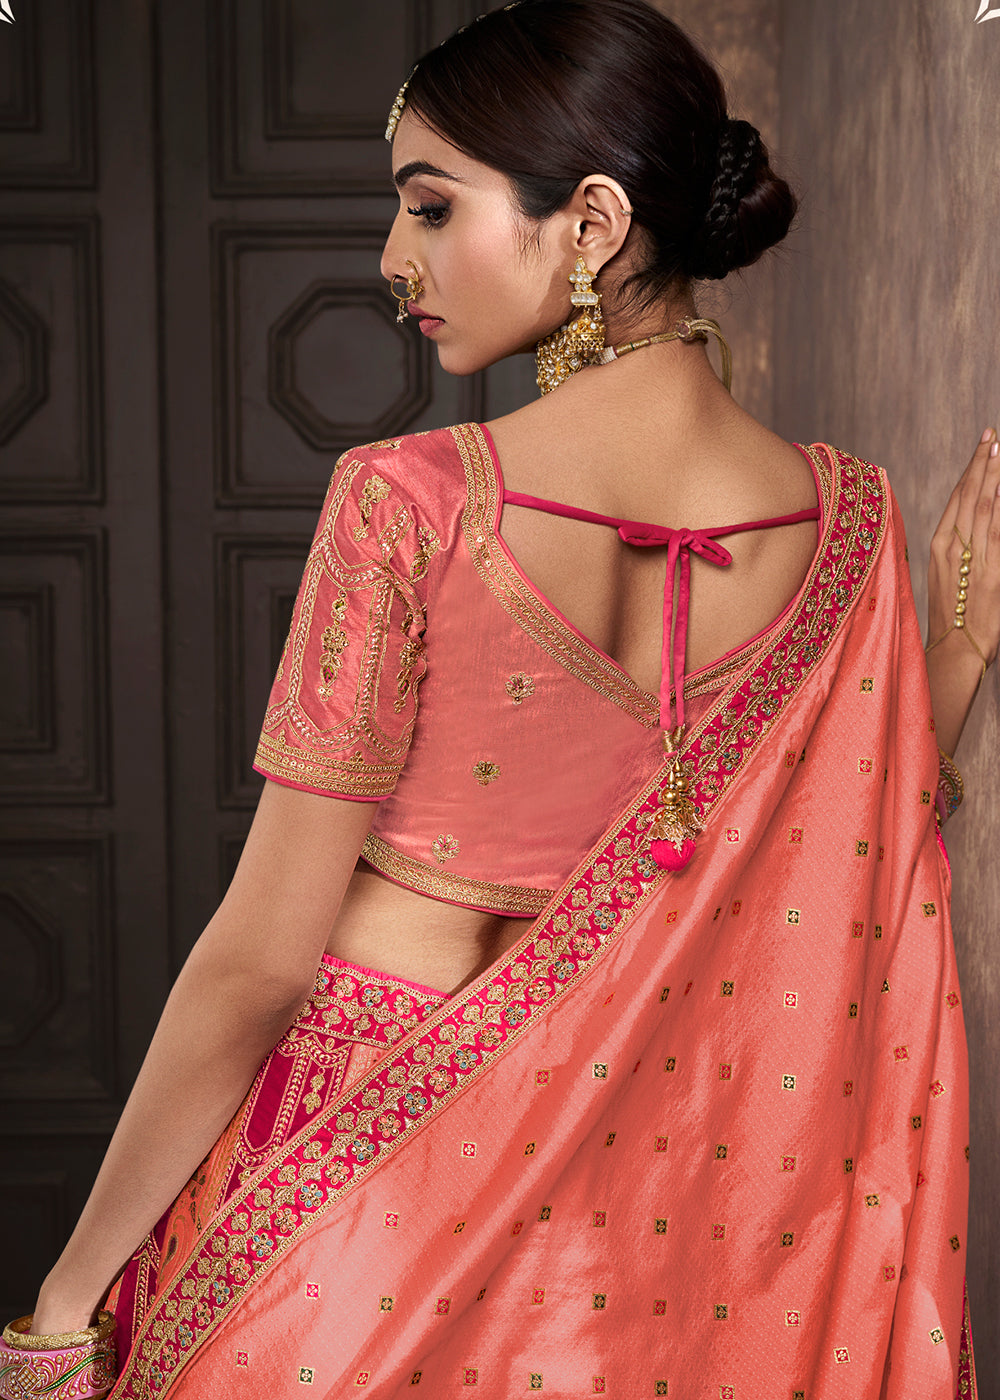 Buy Now Peach & Pink Banarasi Silk Bridal Designer Lehenga Choli Online in USA, UK, Canada & Worldwide at Empress Clothing.